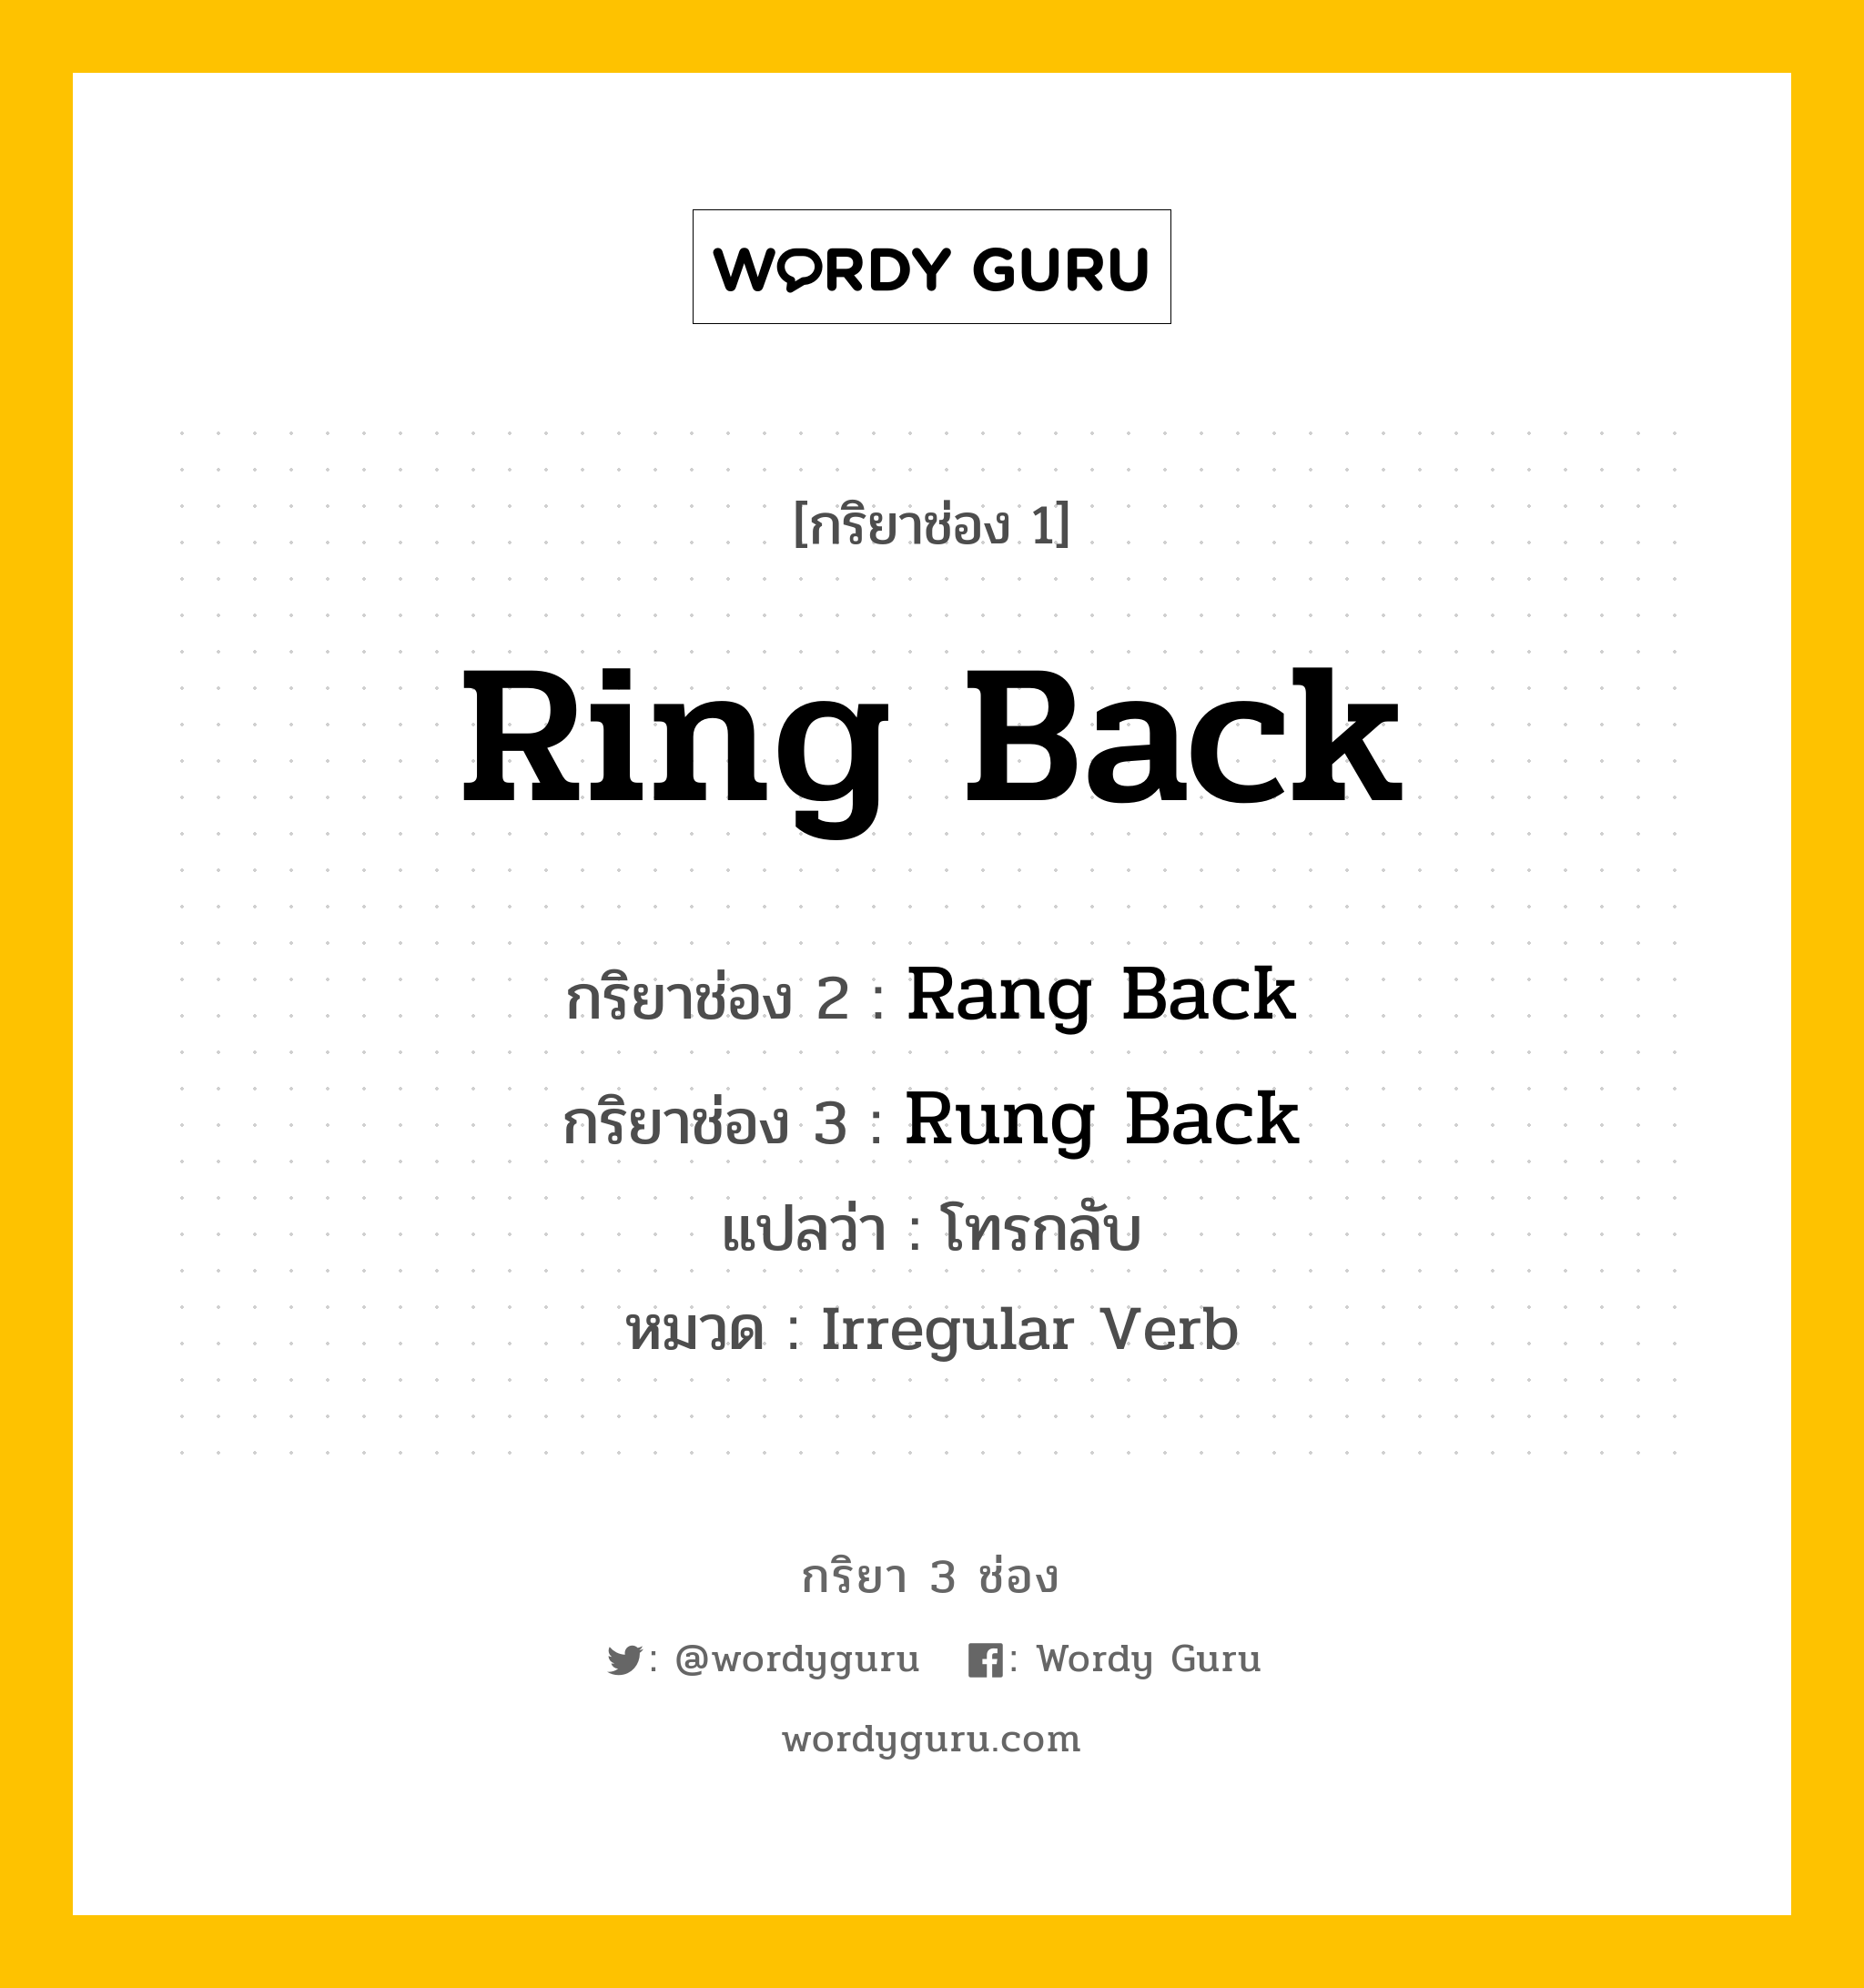 กริยา 3 ช่อง: Ring Back ช่อง 2 Ring Back ช่อง 3 คืออะไร, กริยาช่อง 1 Ring Back กริยาช่อง 2 Rang Back กริยาช่อง 3 Rung Back แปลว่า โทรกลับ หมวด Irregular Verb หมวด Irregular Verb